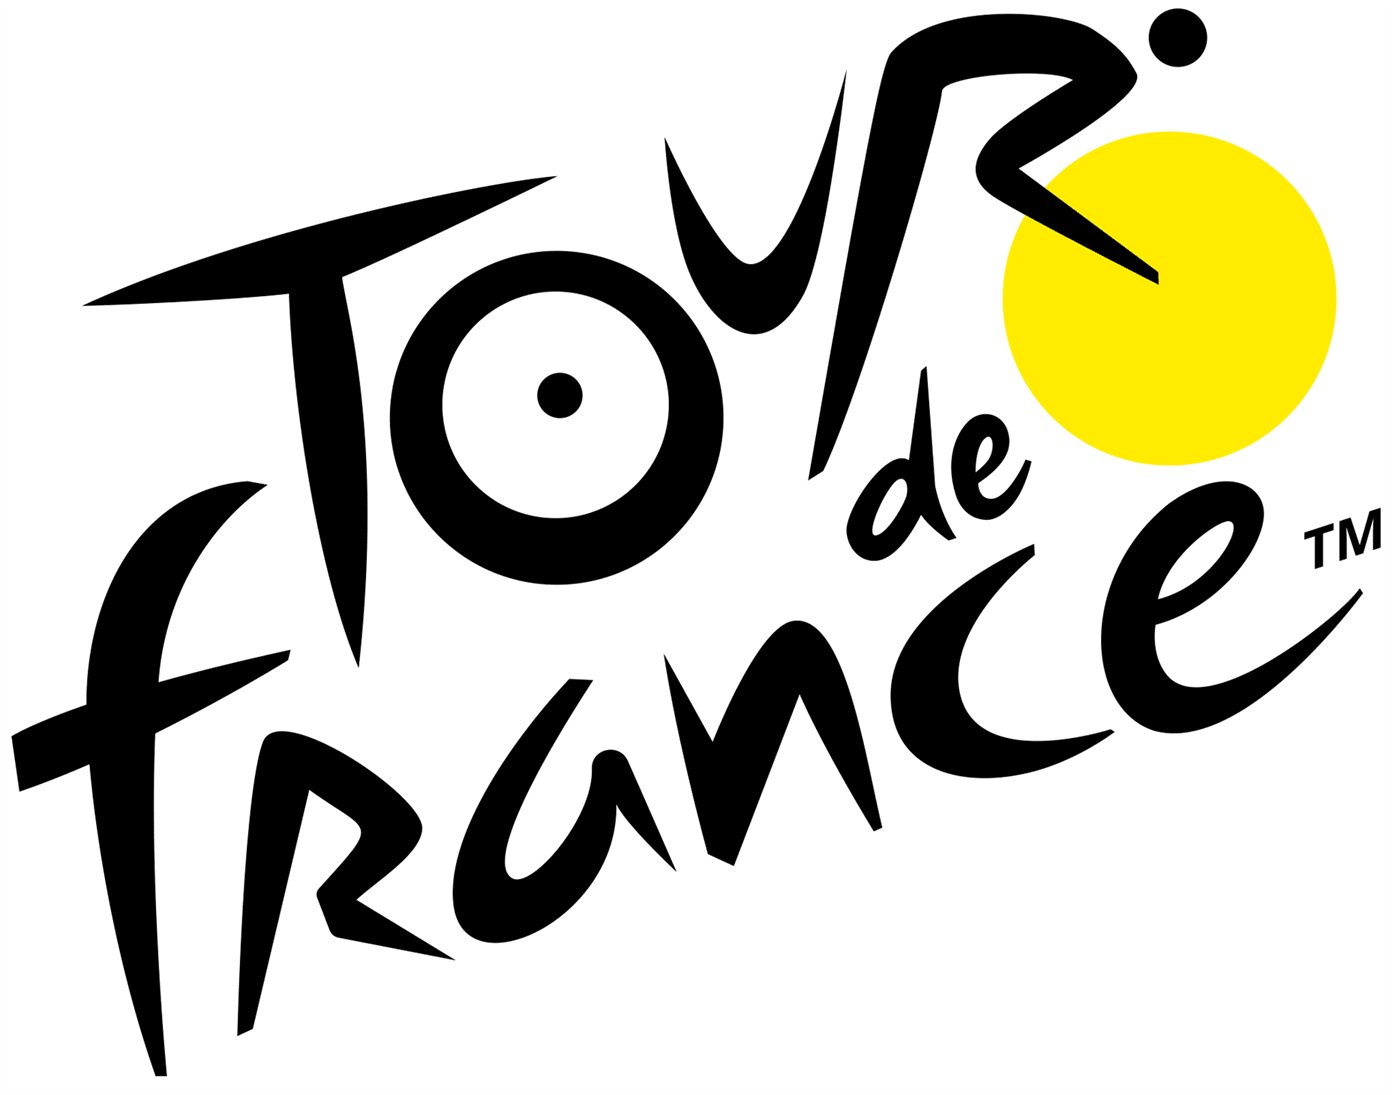 tour-de-france-logo-2019.png